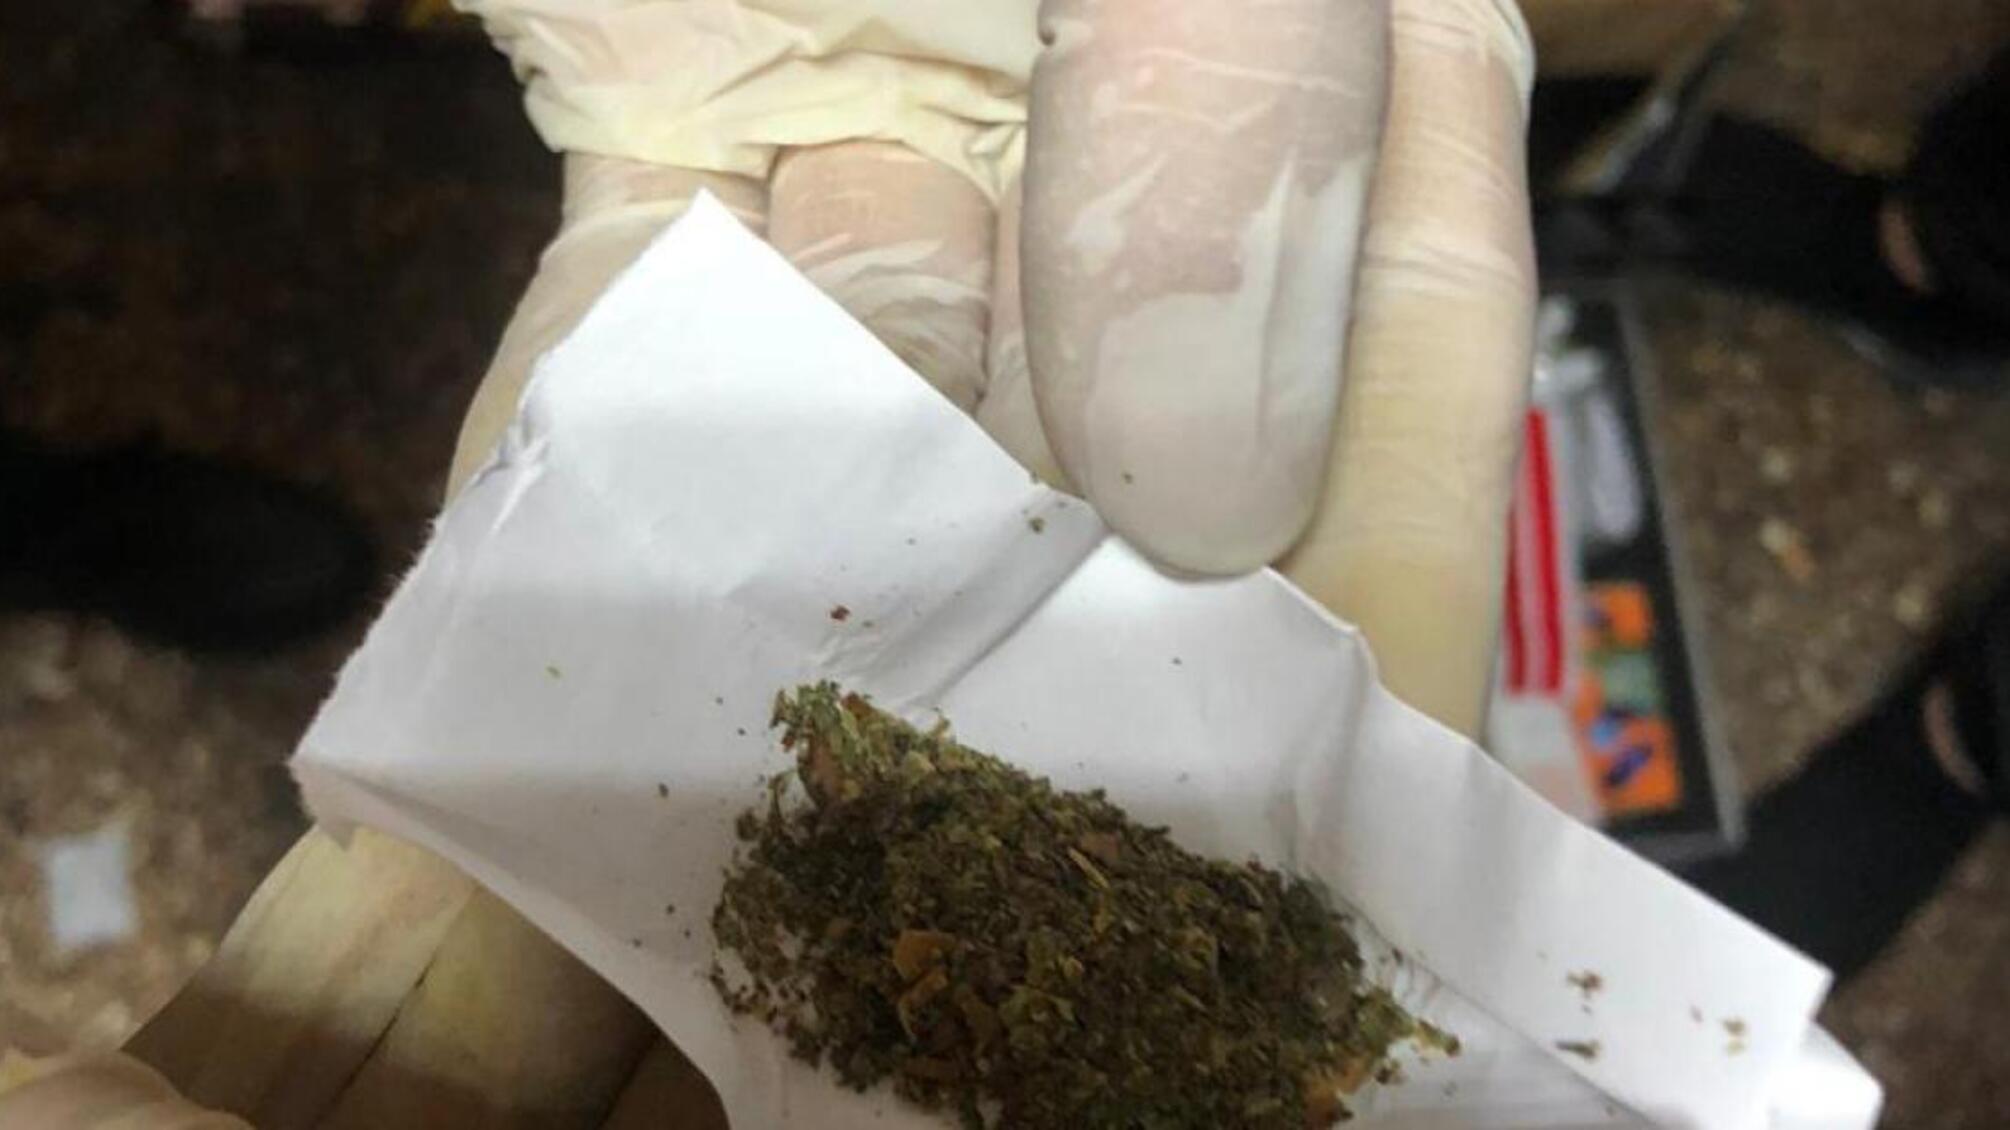 Продаж наркотиків у місця позбавлення волі – ДБР затримало працівника Маріупольського слідчого ізолятору